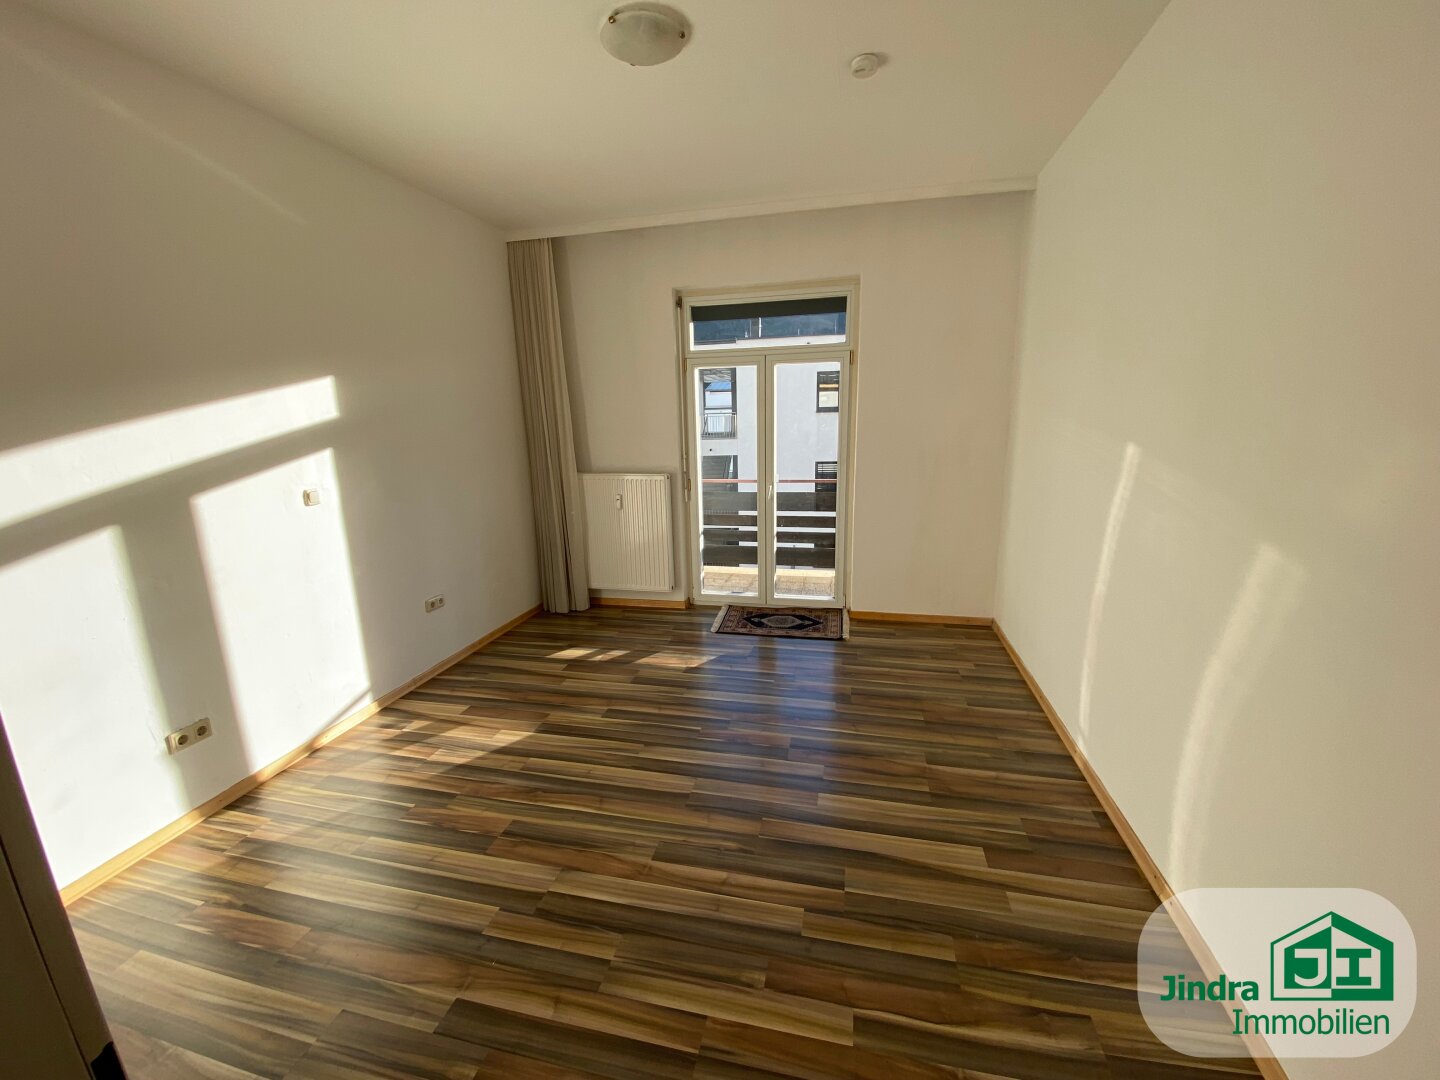 Sanierte 3-Zimmer Wohnung mit sonnigem Balkon in Hall in Tirol zum Verkauf!